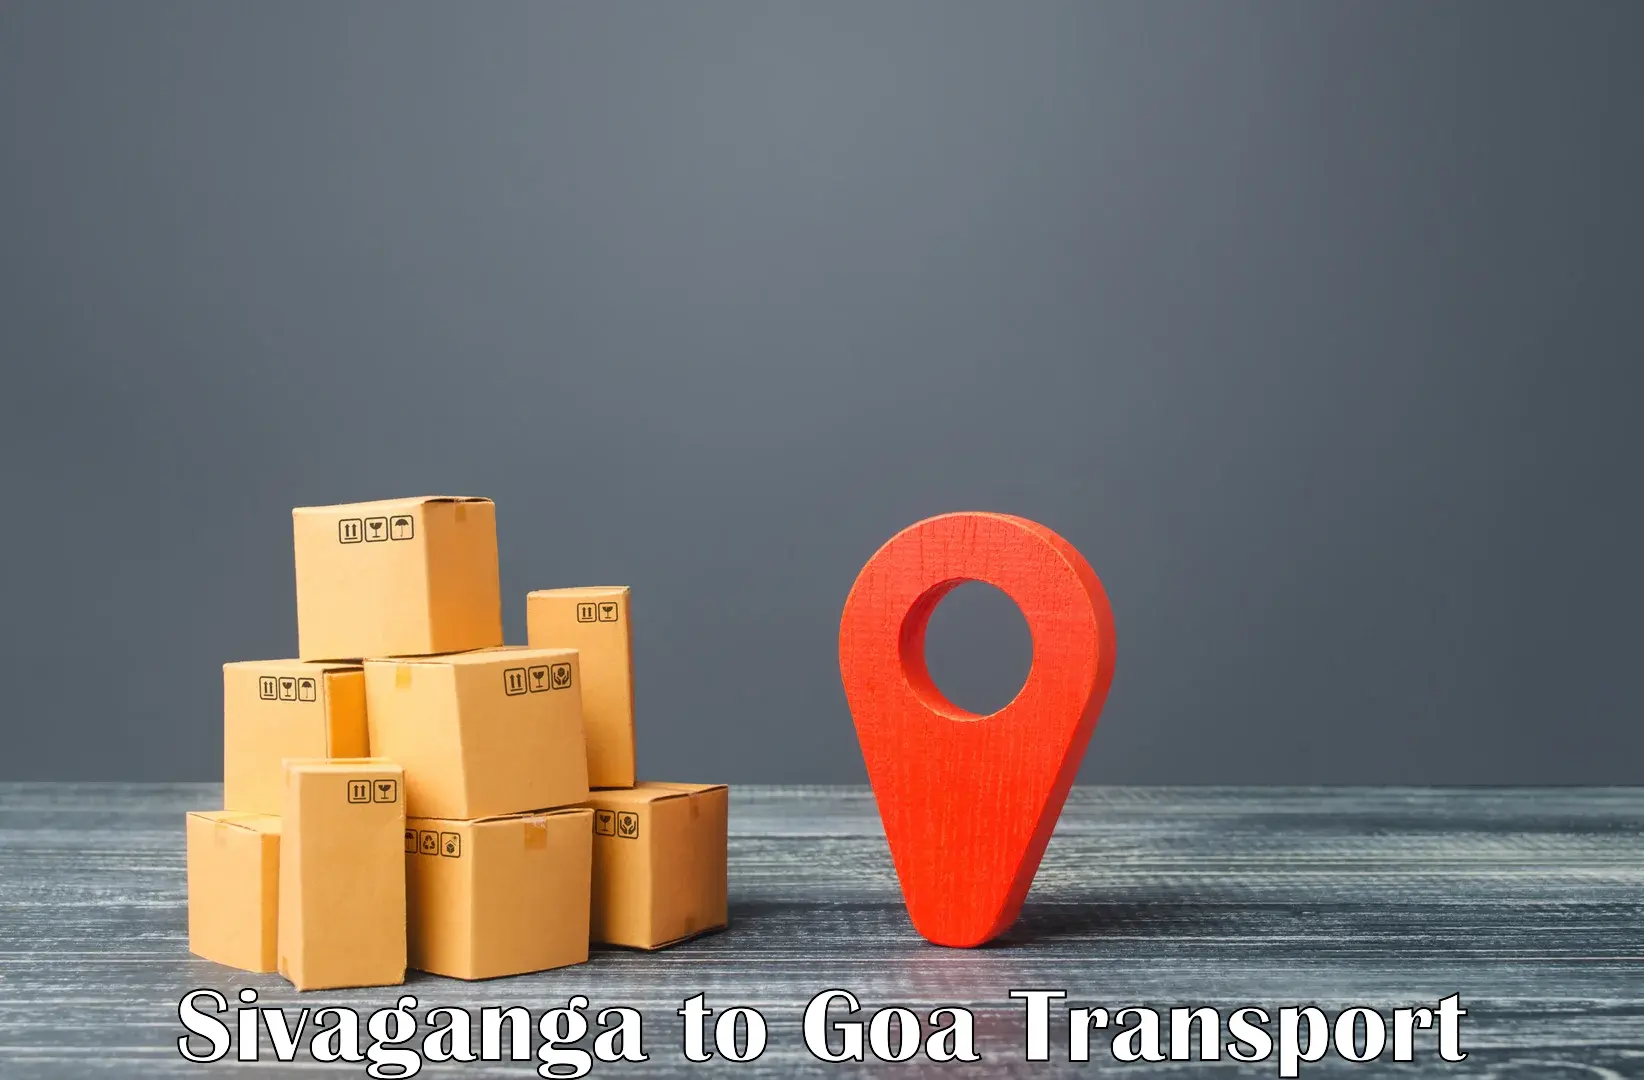 Sending bike to another city Sivaganga to Goa